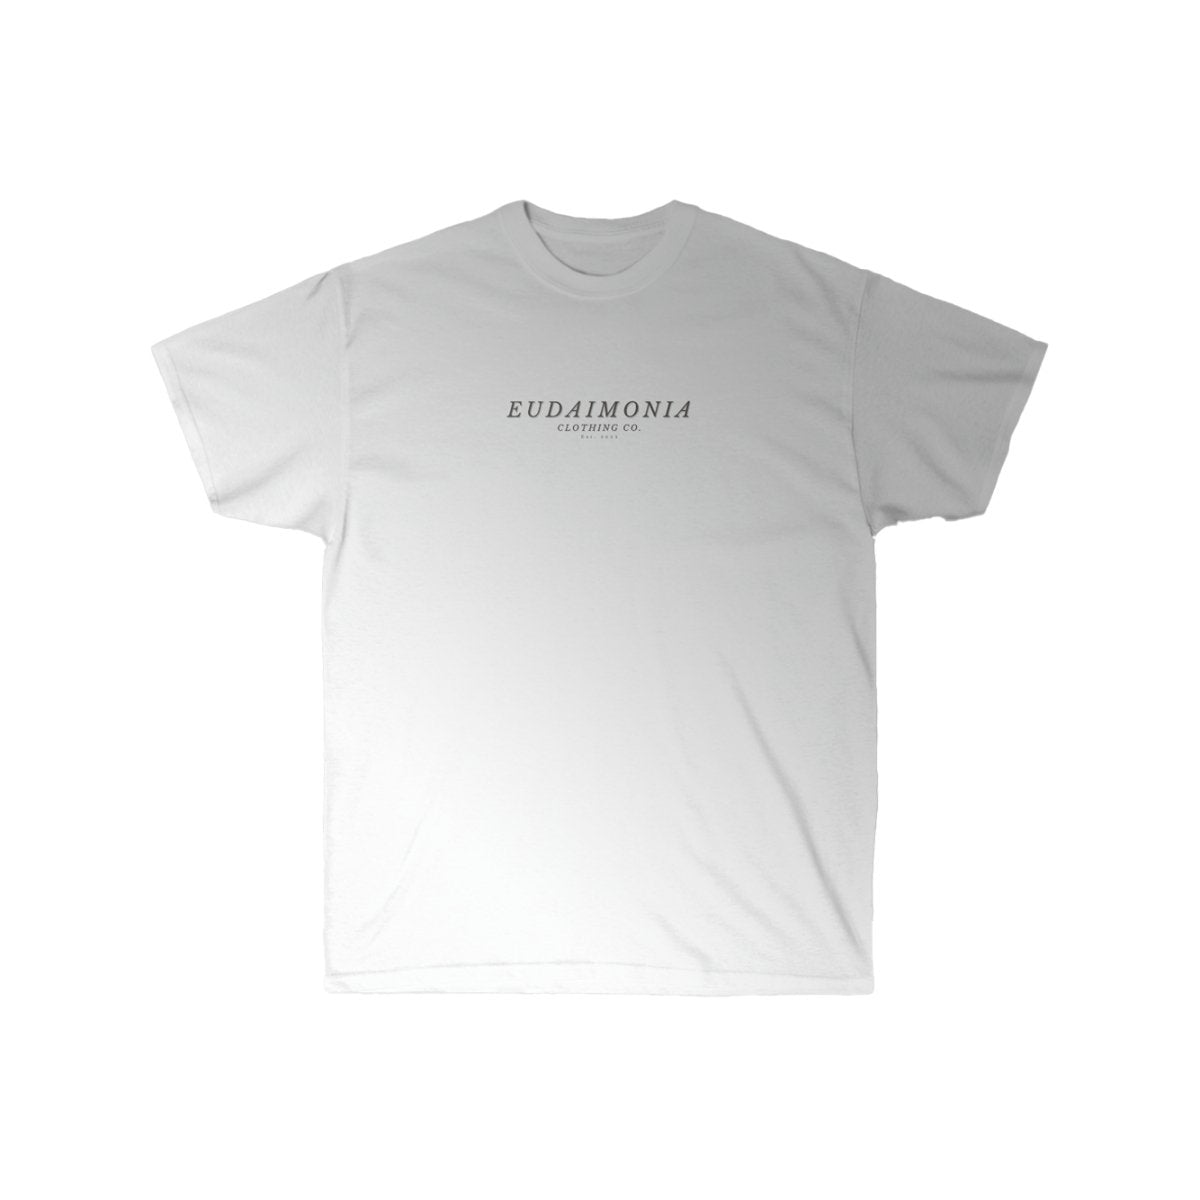 Eudaimonia Clothing - Memento Mori - 3 - tshirts -